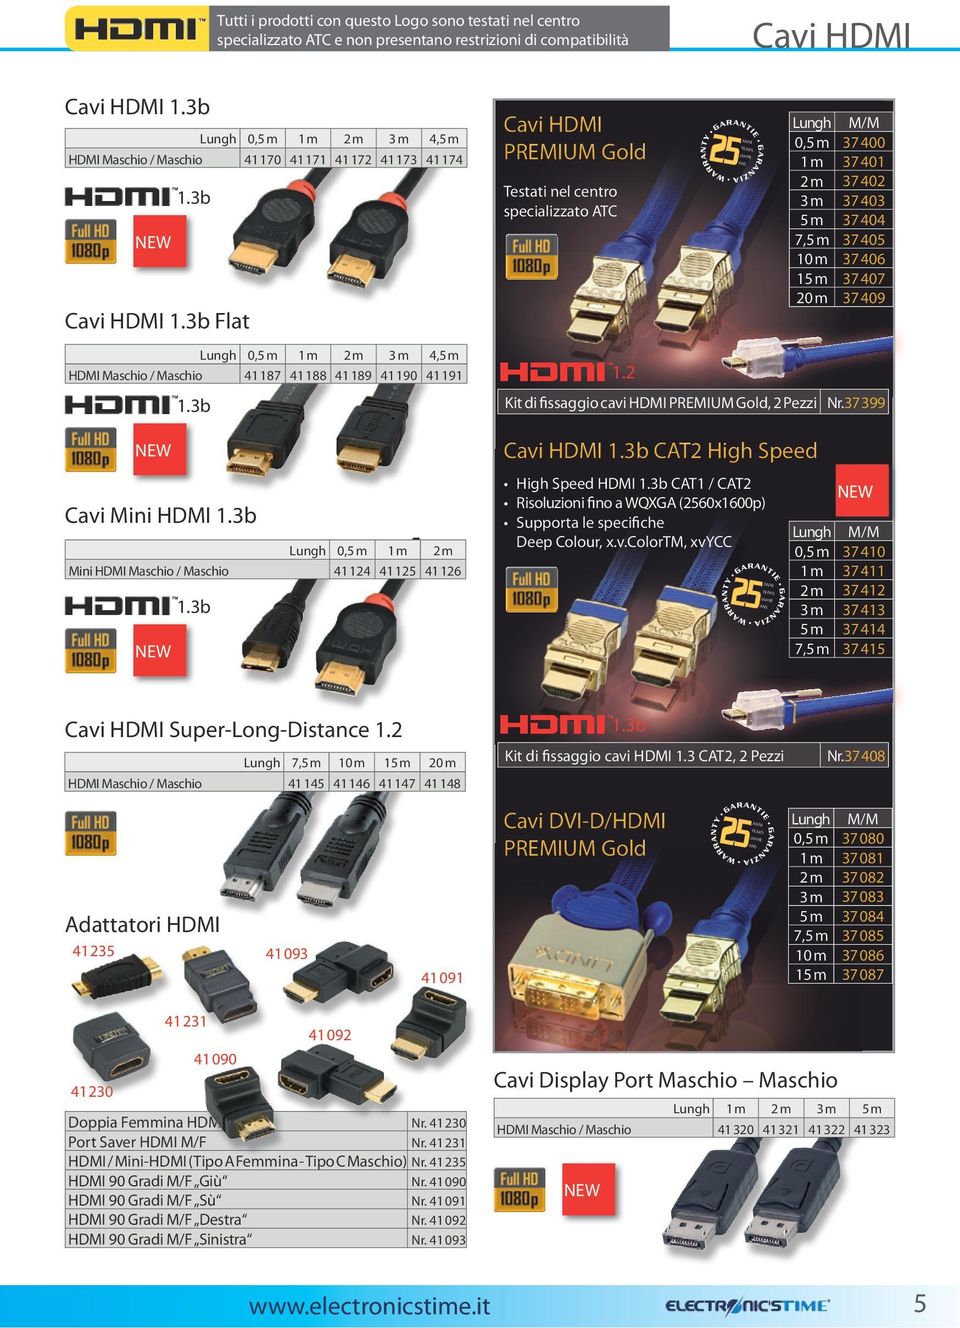 3b Cavi Mini HDMI 1.3b Lungh 0,5m 1m 2m Mini HDMI Maschio / Maschio 41124 41125 41126 1.3b Cavi HDMI PREMIUM Gold Testati nel centro specializzato ATC 1.